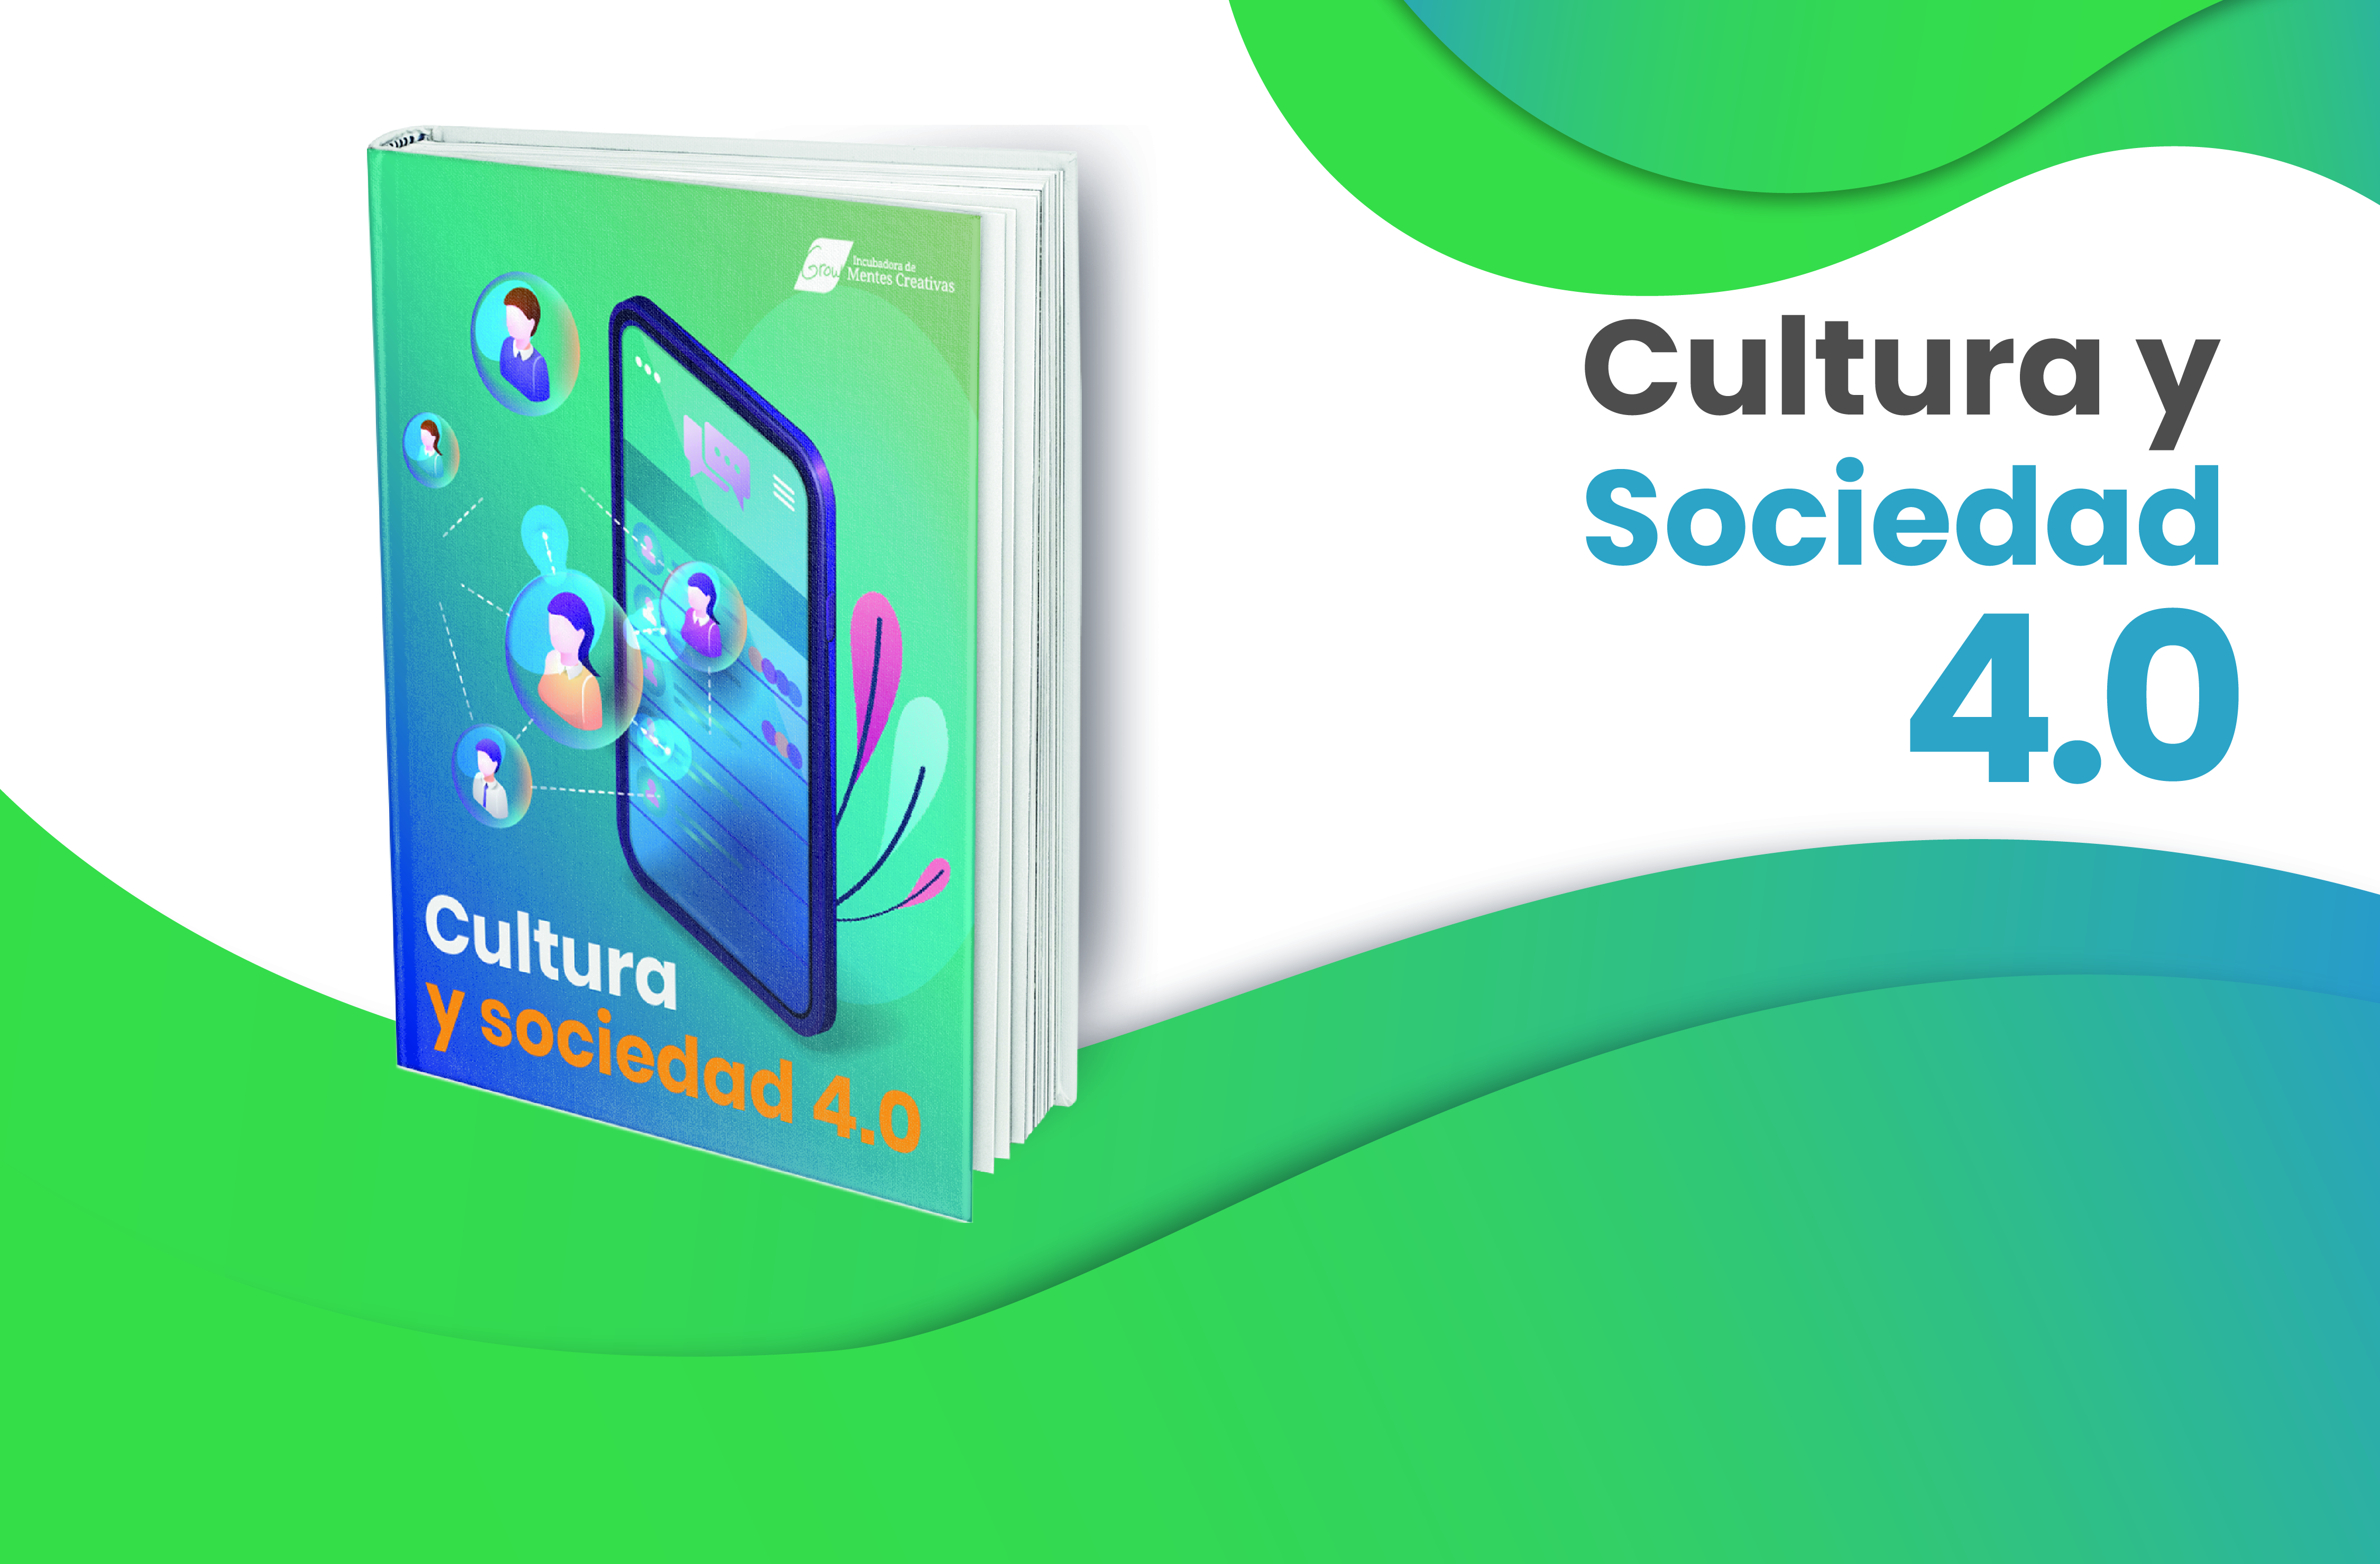 Cultura y sociedad 4.0